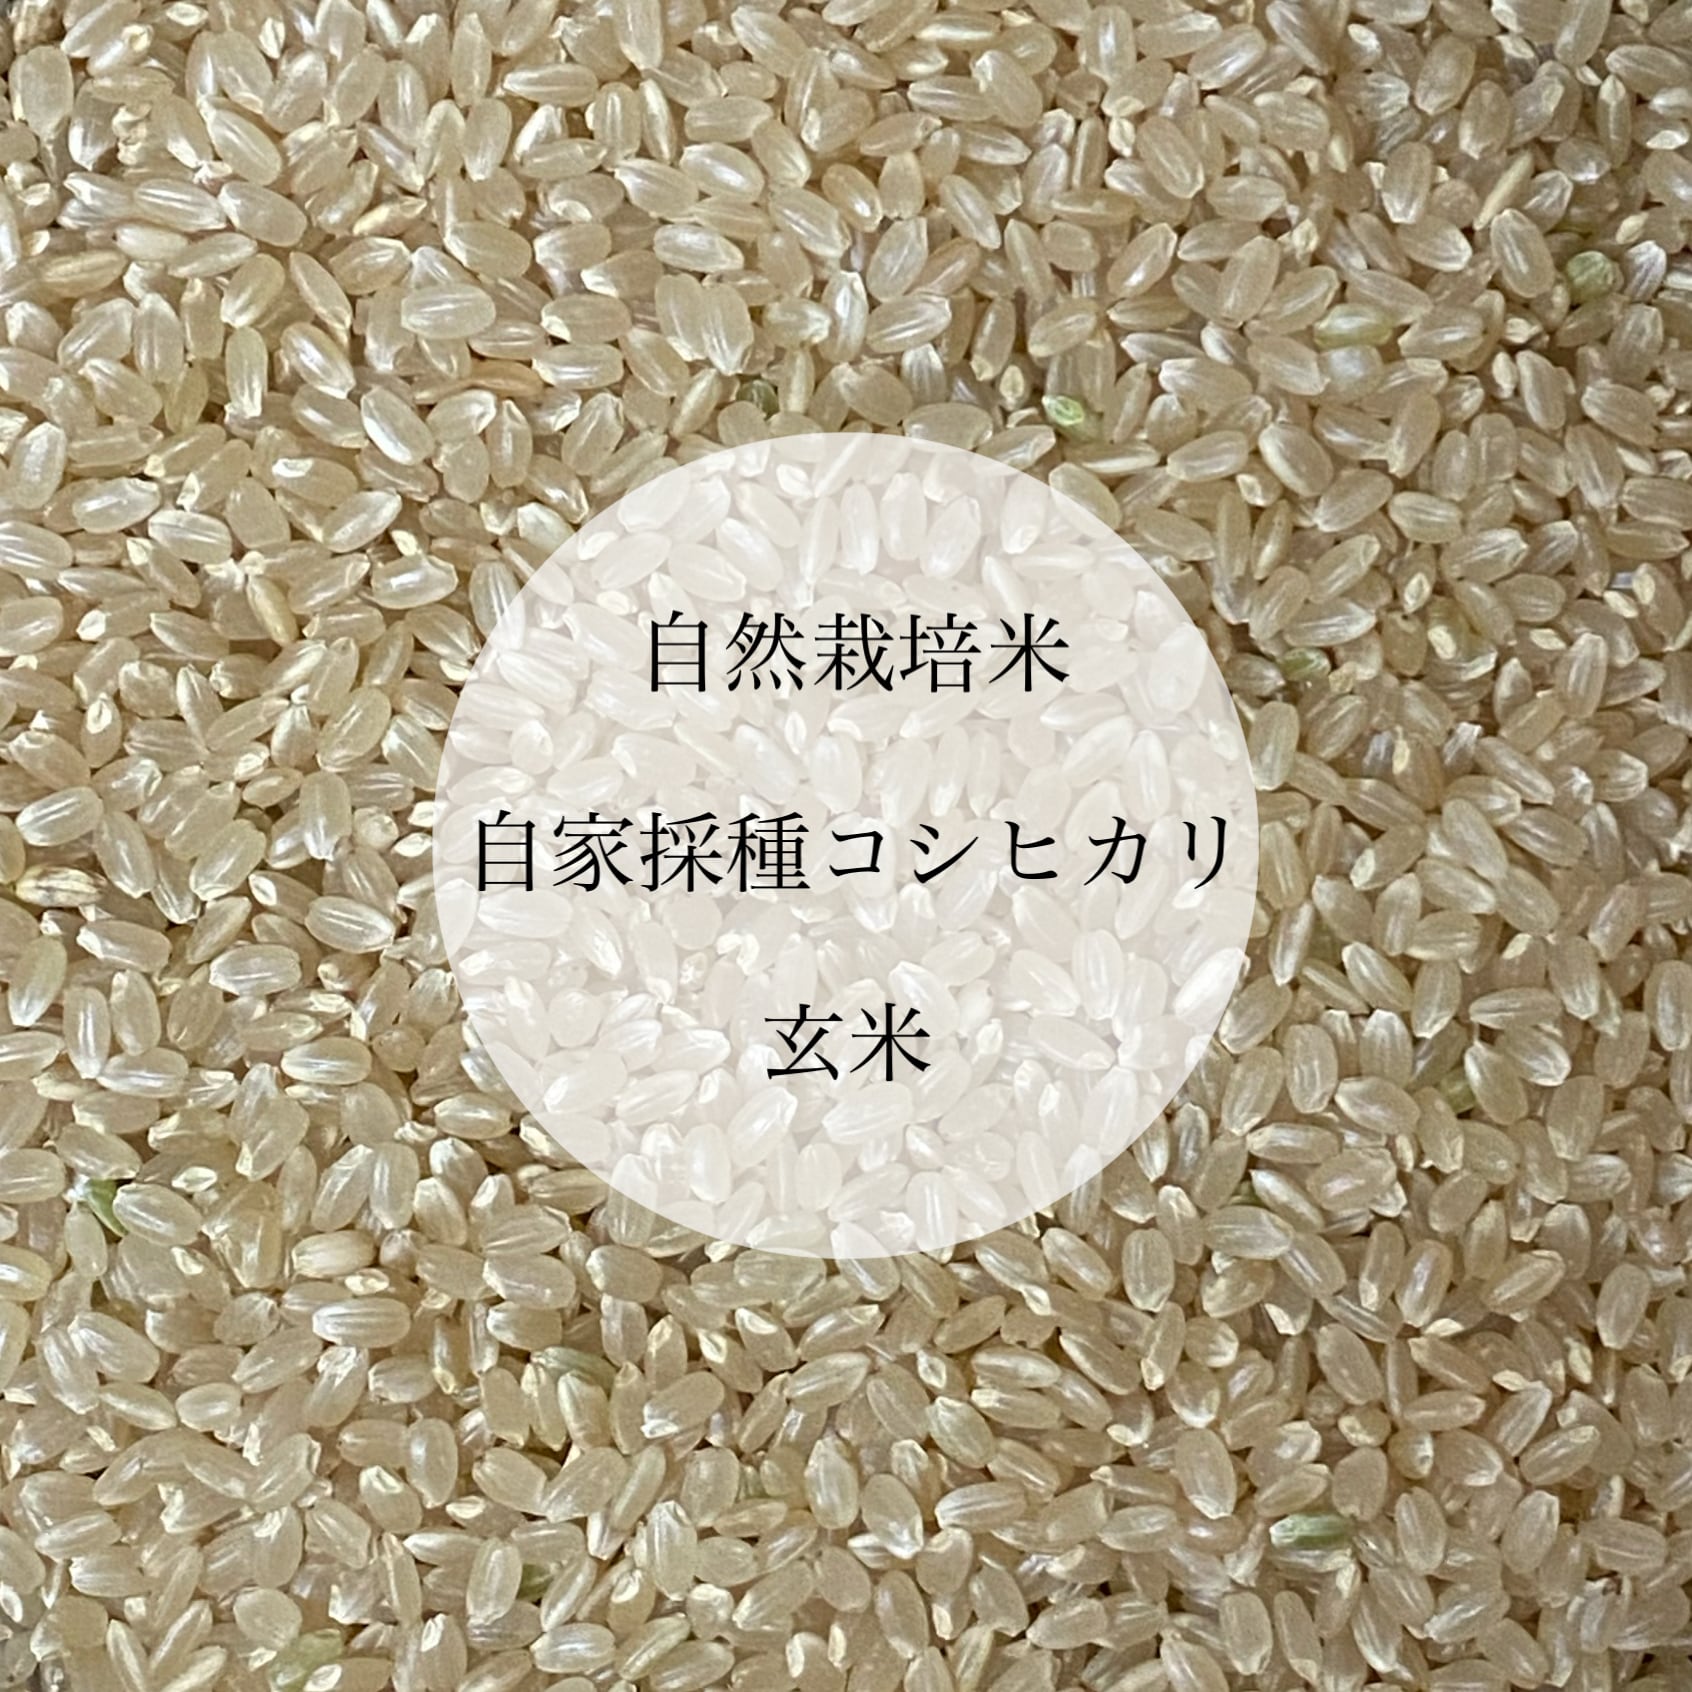 静岡コシヒカリ20kg農薬:栽培期間中不使用 - 米